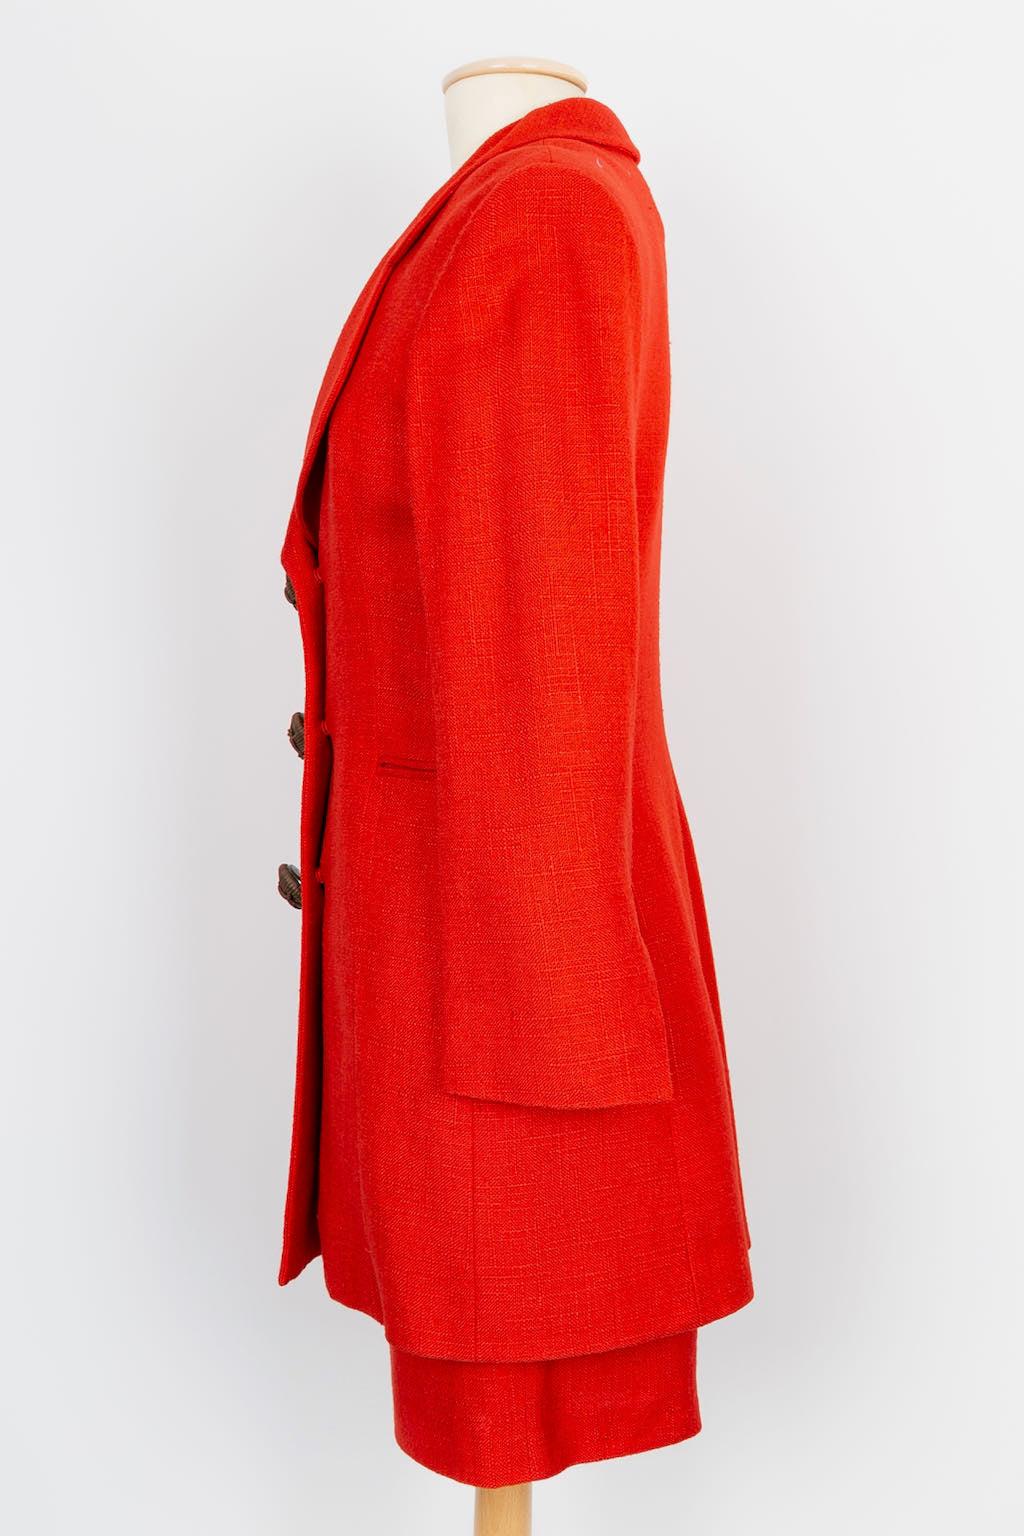 Dior - Dreiteiliges Set aus rotem Leinen und Baumwolle mit Lederknöpfen. Keine Zusammensetzung Label oder Größe angegeben, es passt 36FR.

Zusätzliche Informationen: 
Abmessungen: Jacke: Schulterbreite: 44 cm, Brustumfang: 45 cm, Ärmellänge: 59 cm,